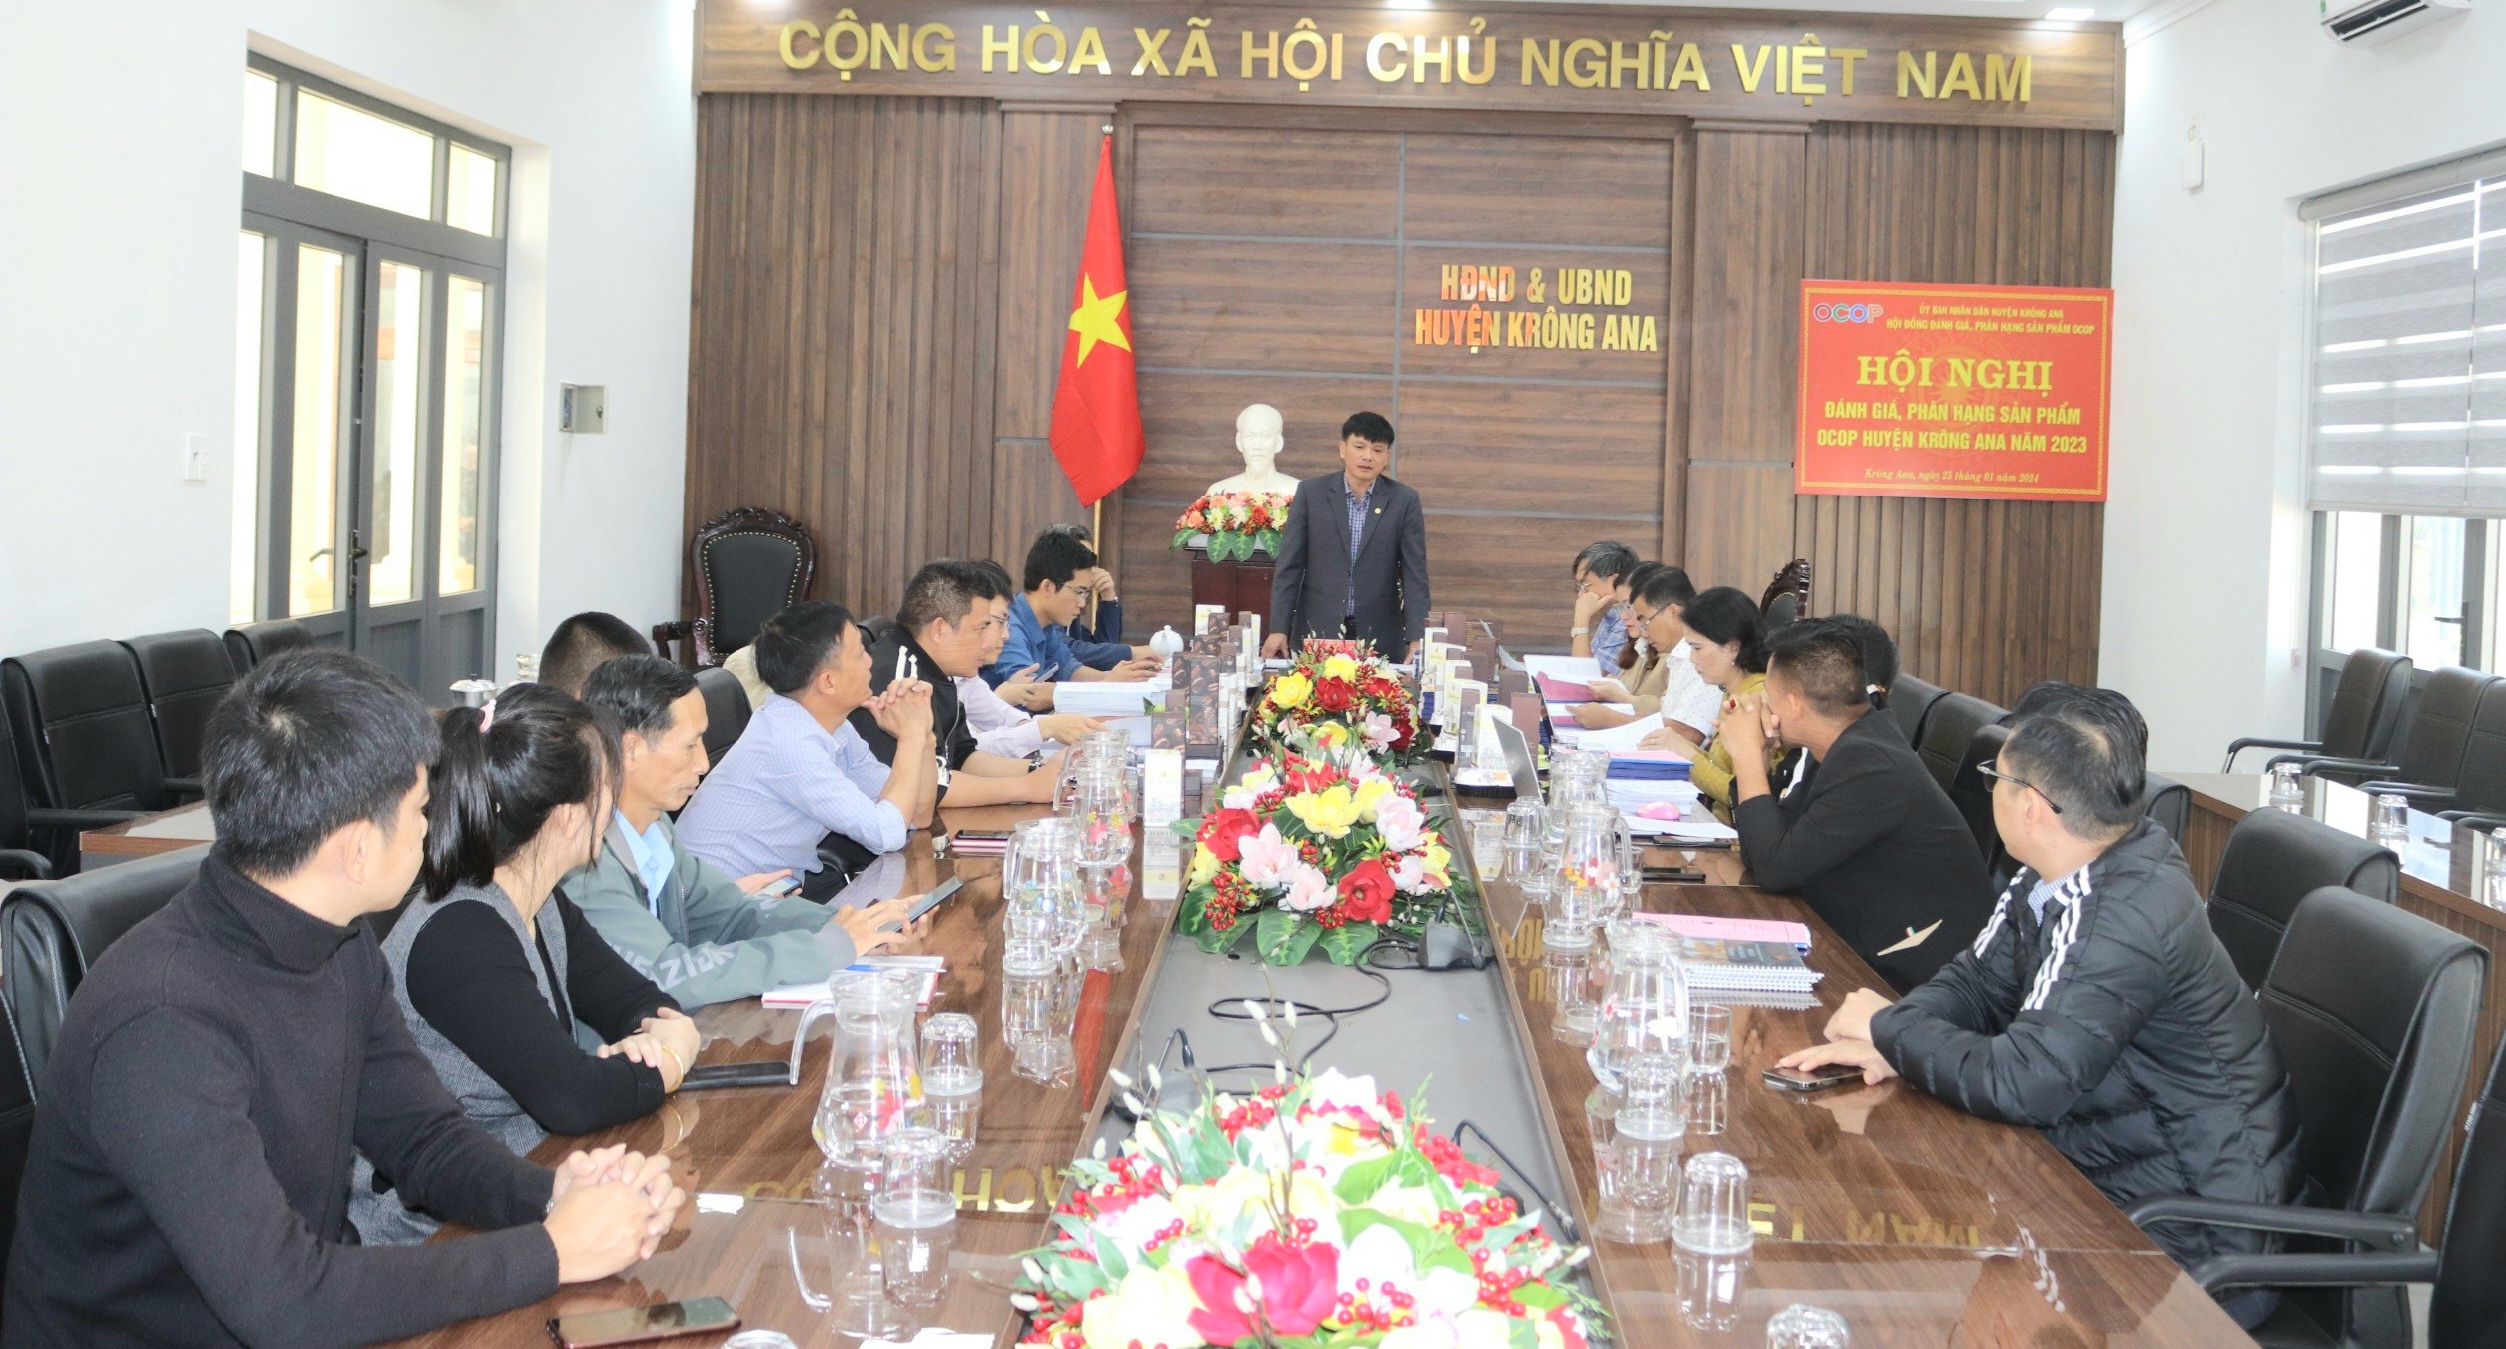 Hội nghị đánh giá, xếp hạng sản phẩm OCOP trên địa bàn  huyện Krông Ana năm 2023